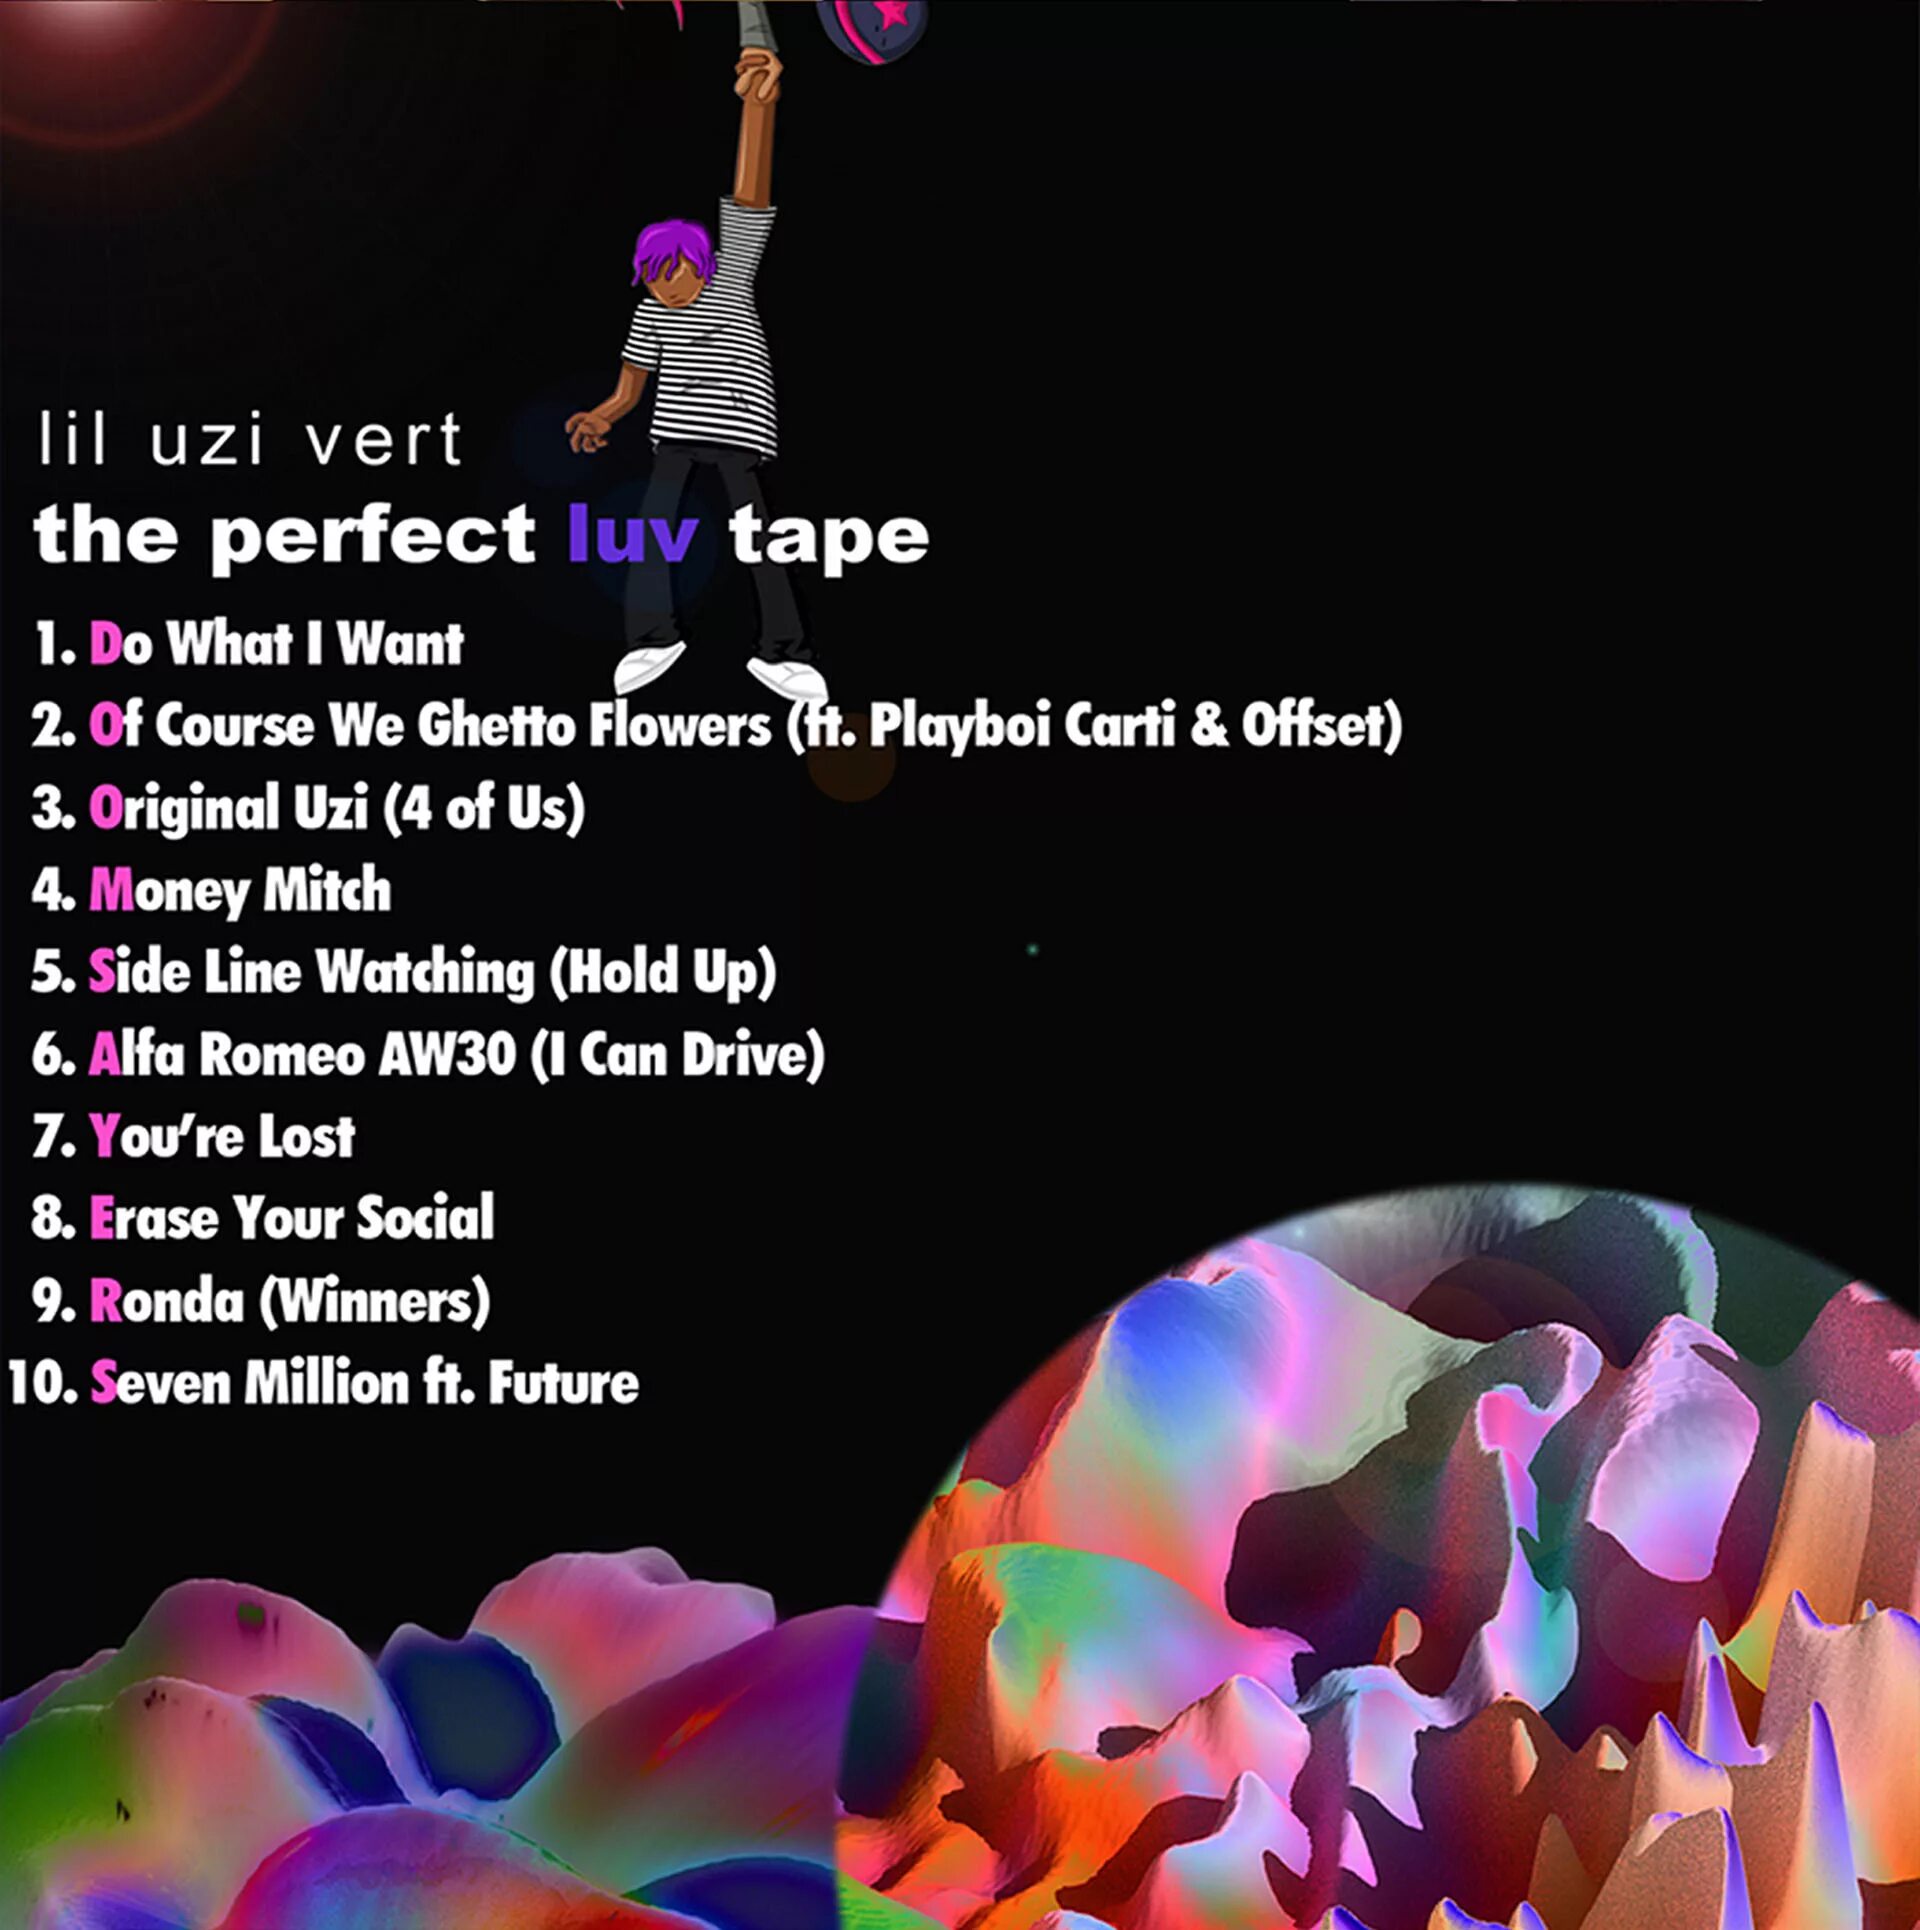 Lil uzi текста. Lil Uzi Vert the perfect Luv Tape. Pink Tape Lil Uzi Vert обложка. The perfect Luv Tape обложка. Lil Uzi Vert album Cover.